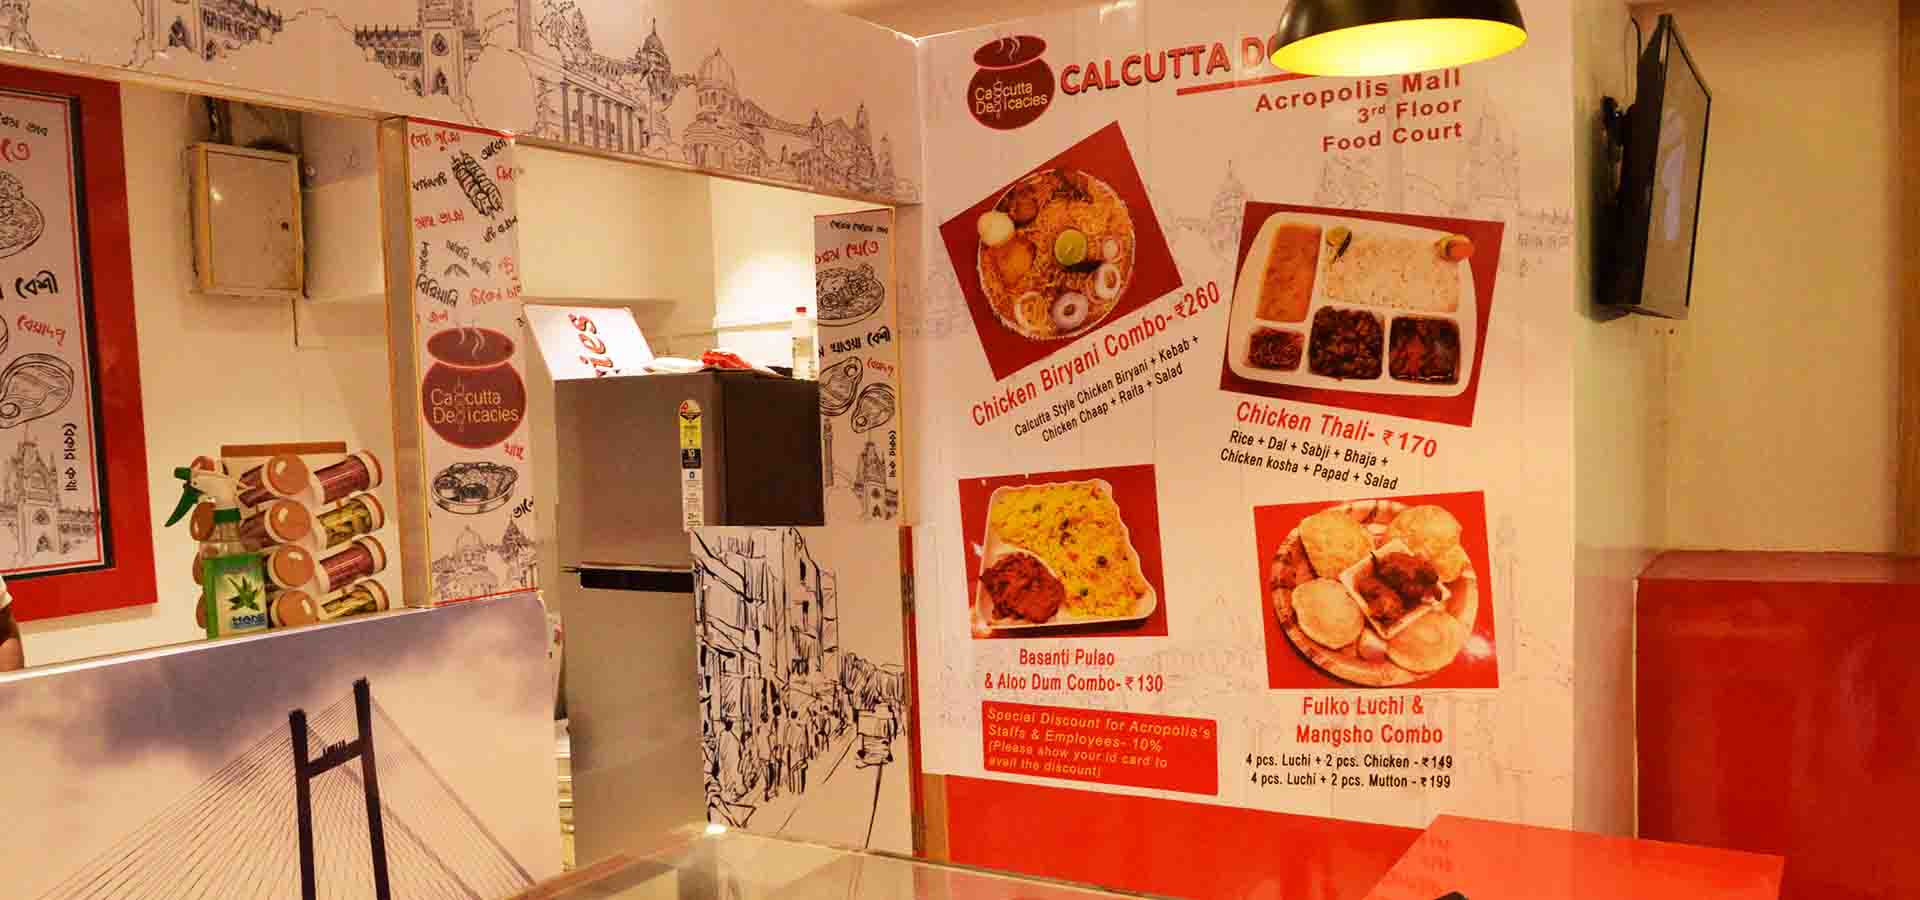 Calcutta Delicacies store photos in mall